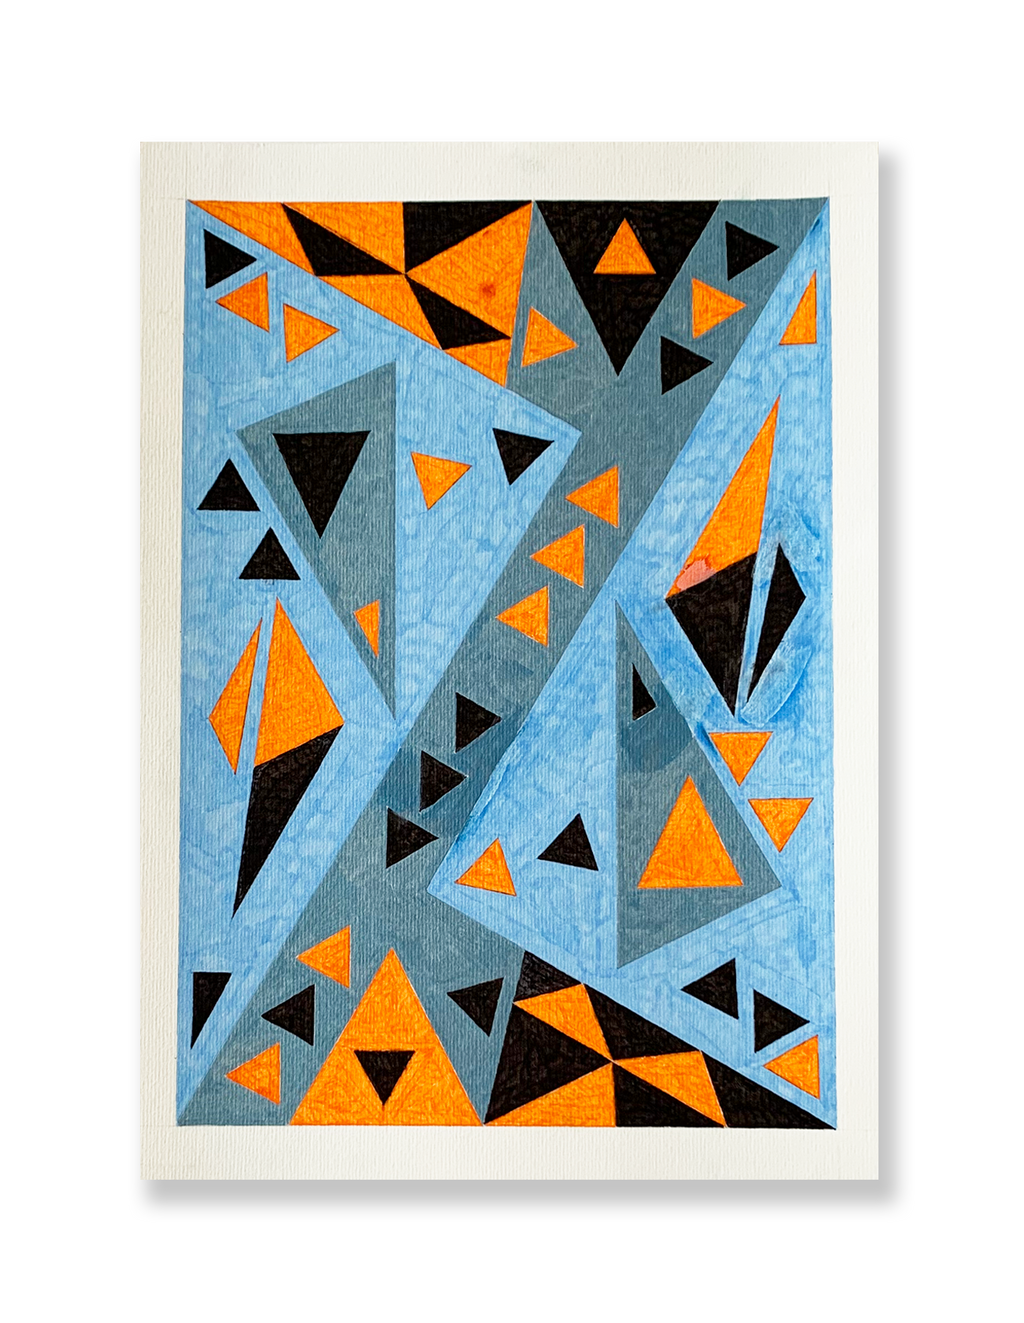 'Interrupções não triangulares', série 'Triângulos' // Iur Seravat Fulam